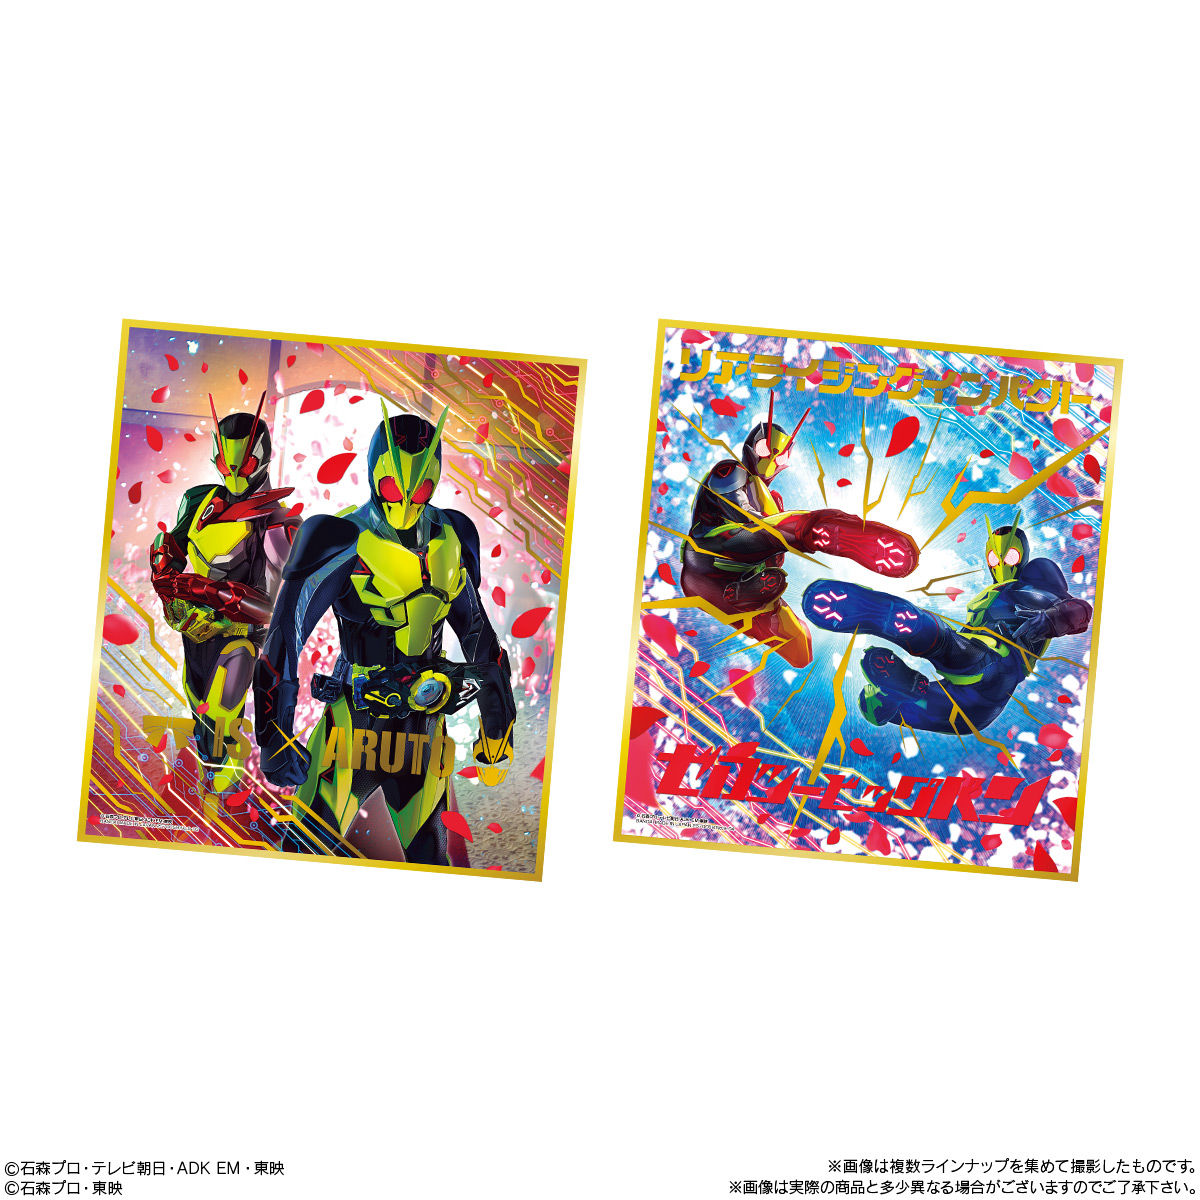 【食玩】仮面ライダー『仮面ライダー色紙ART9』10個入りBOX-003